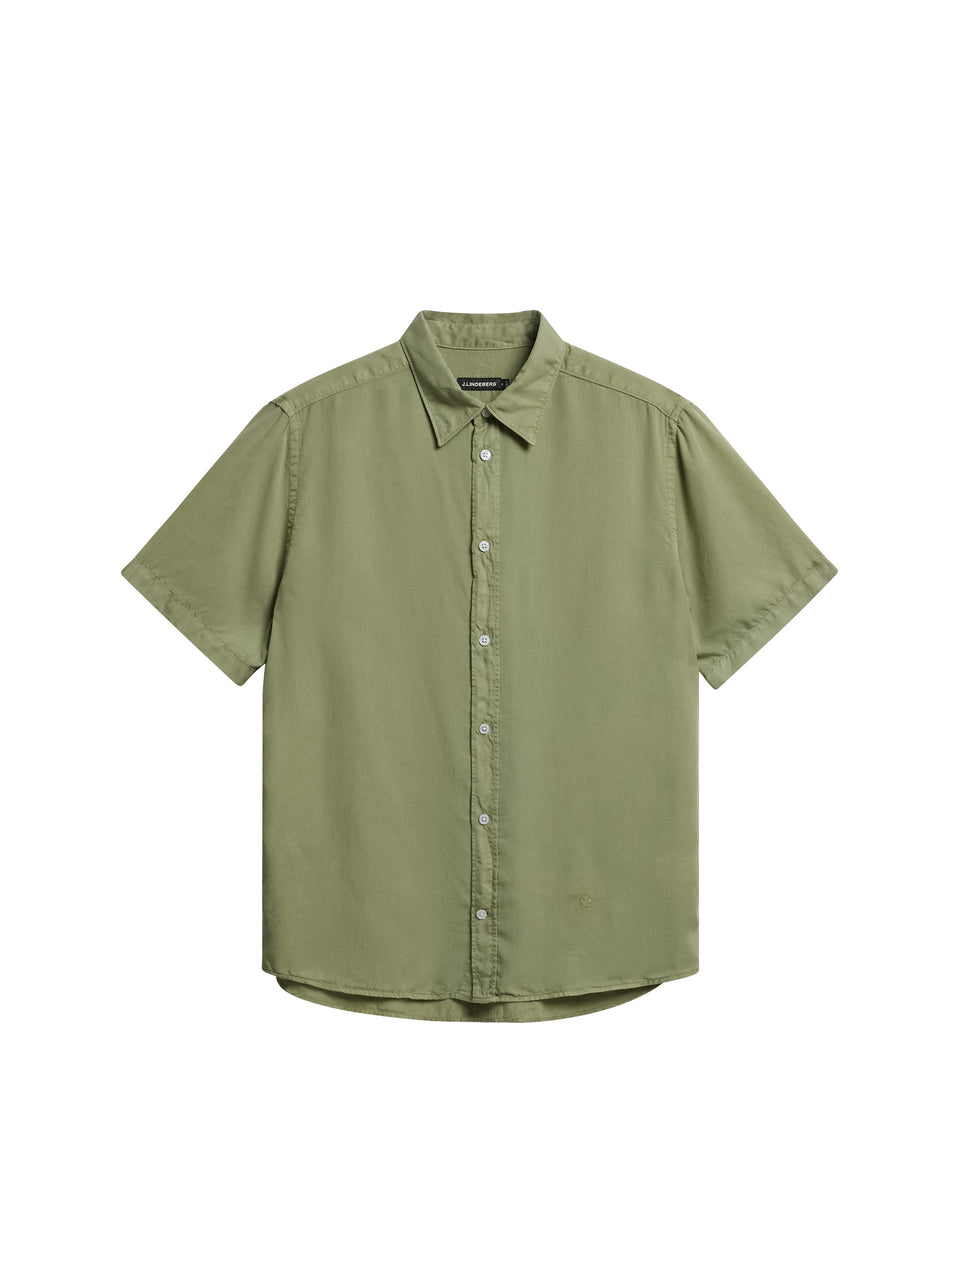 Reg SS Light Tencel Shirt / Oil Green